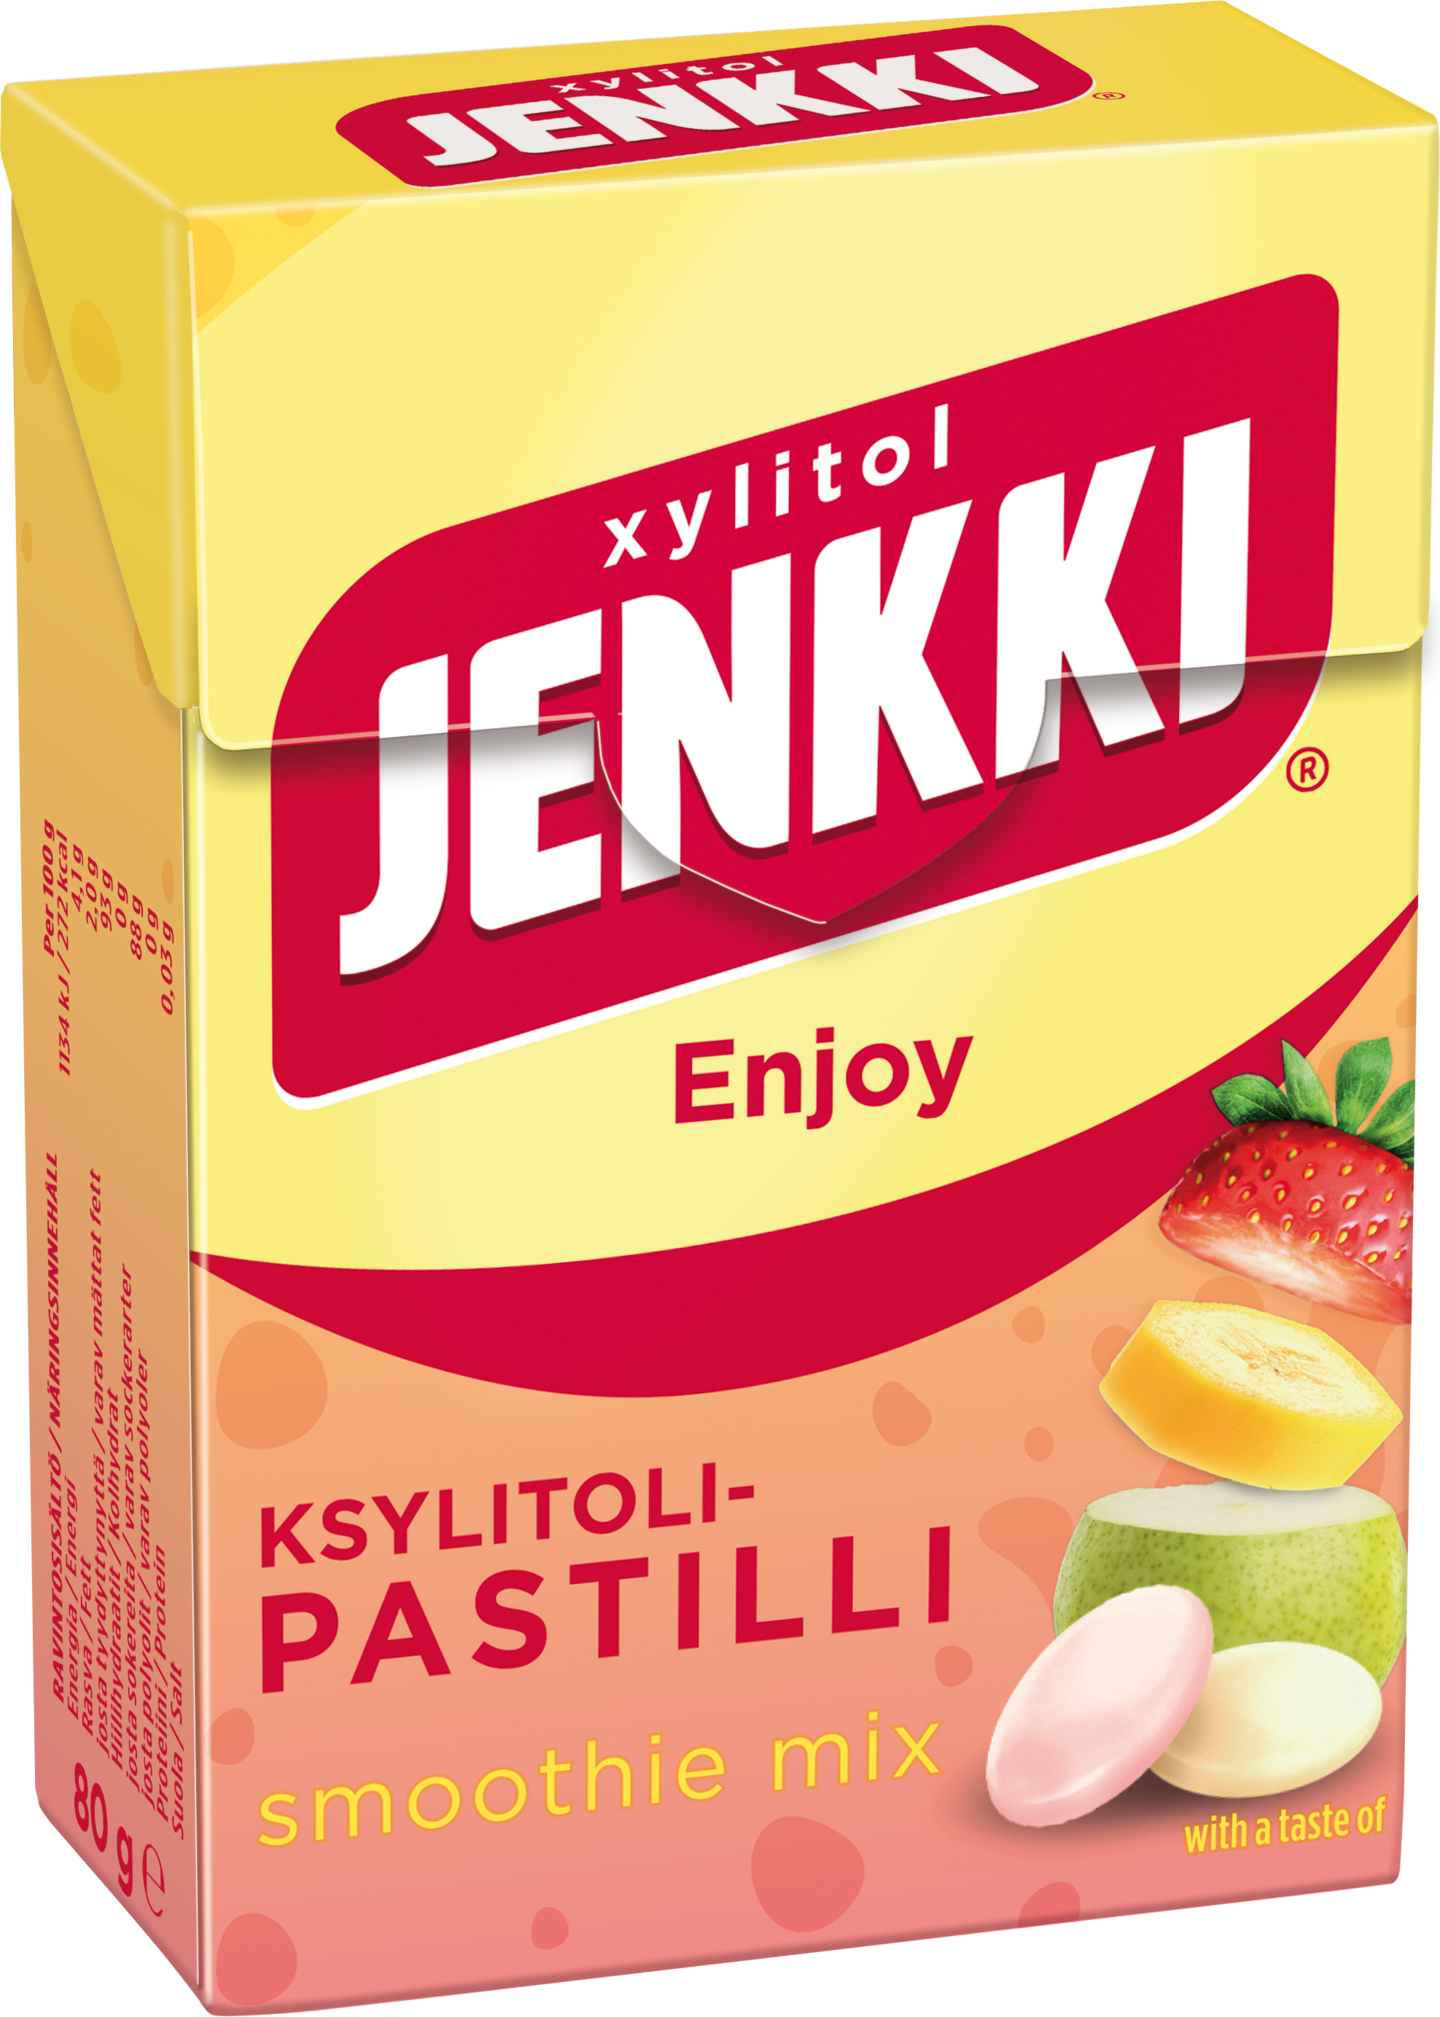 Jenkki Enjoy Smoothie Mix ksylitolipastilli 80g